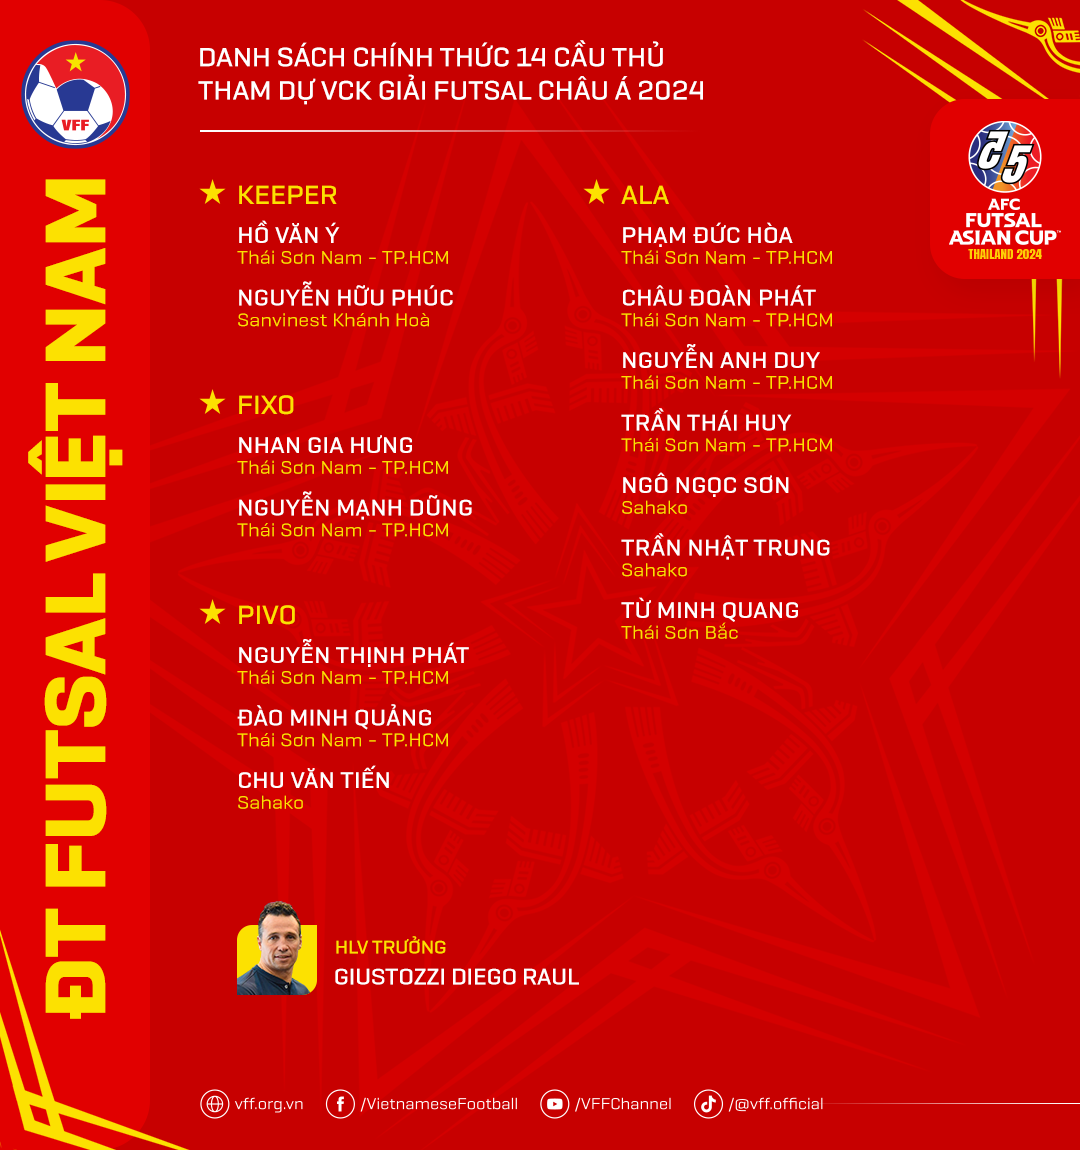 Chốt danh sách ĐT Futsal Việt Nam dự VCK châu Á 2024 - Ảnh 1